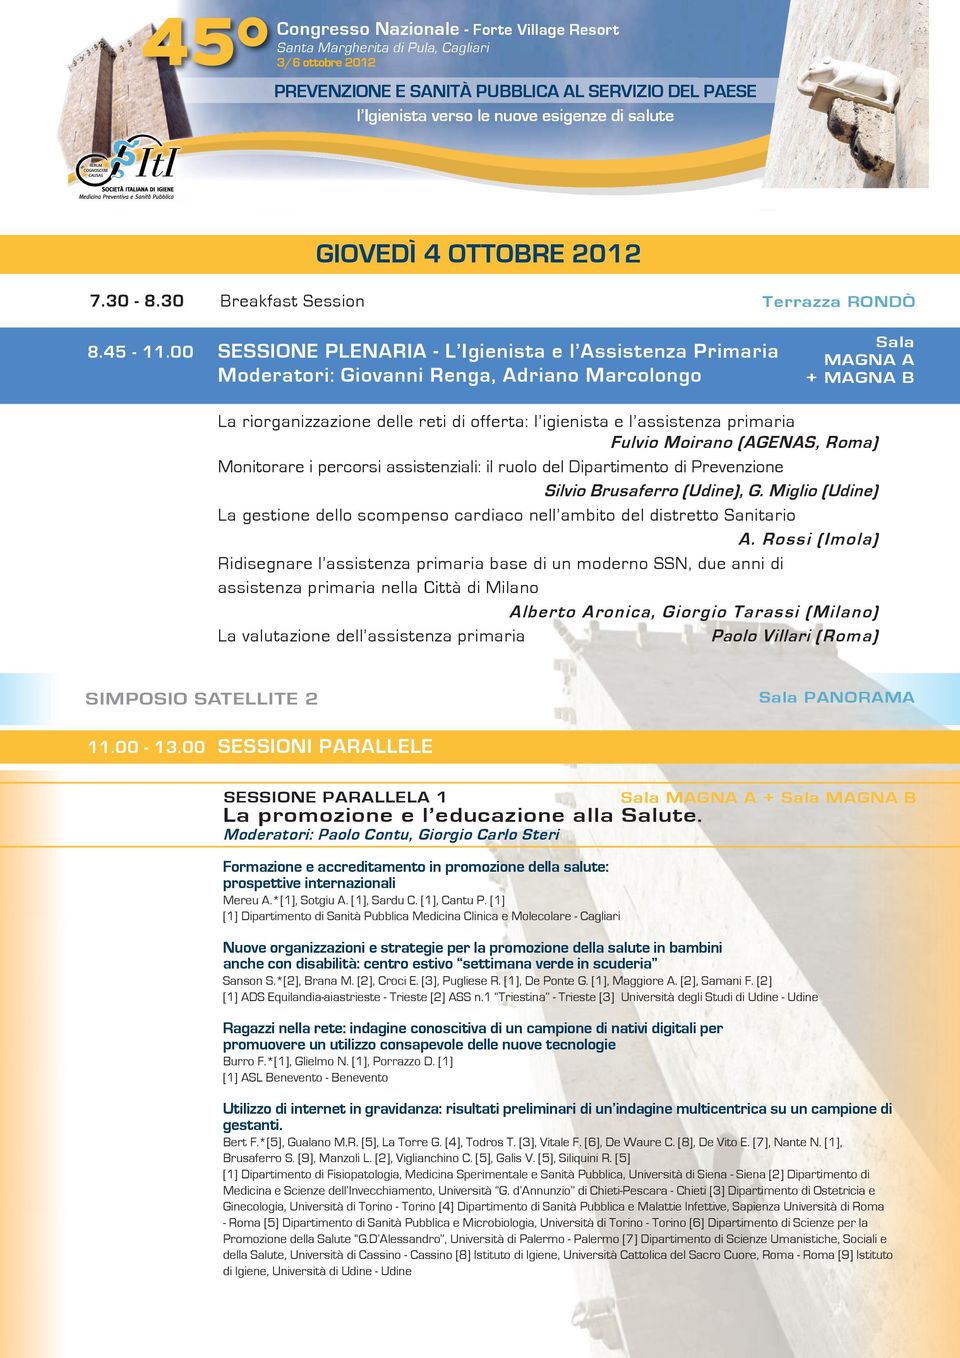 primaria Fulvio Moirano (AGENAS, Roma) Monitorare i percorsi assistenziali: il ruolo del Dipartimento di Prevenzione Silvio Brusaferro (Udine), G.